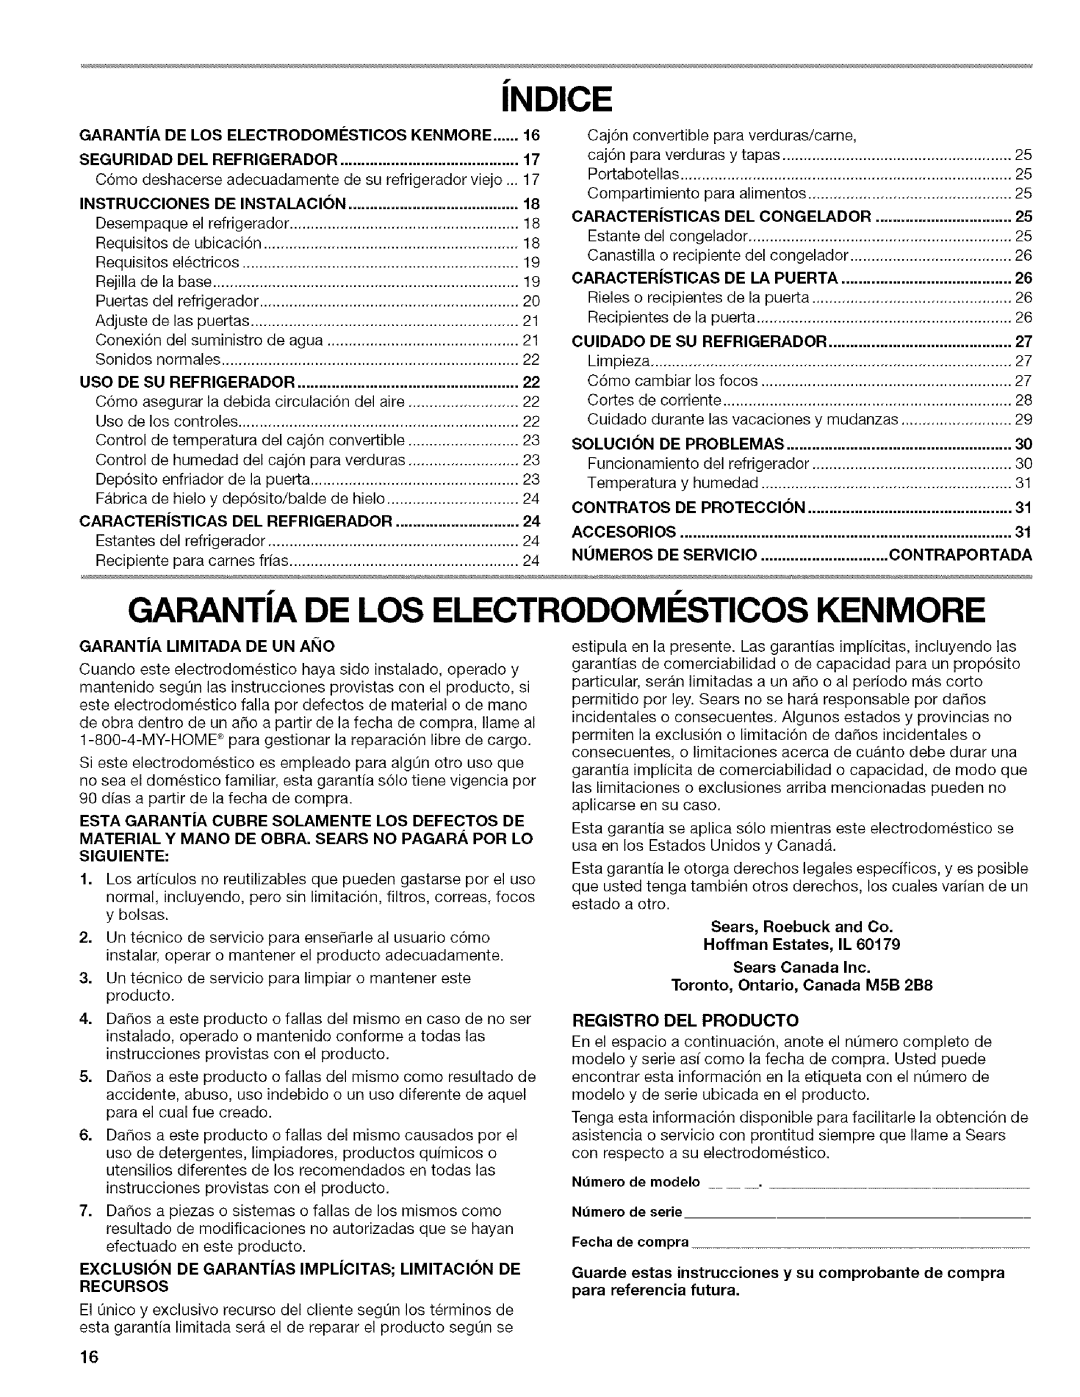 Kenmore w10144349A iNDICE, GARANTiA DE LOS ELECTRODOMI STICOS KENMORE, GARANTiA DE LOS ELECTRODOMI-STICOSKENMORE, Cuidado 